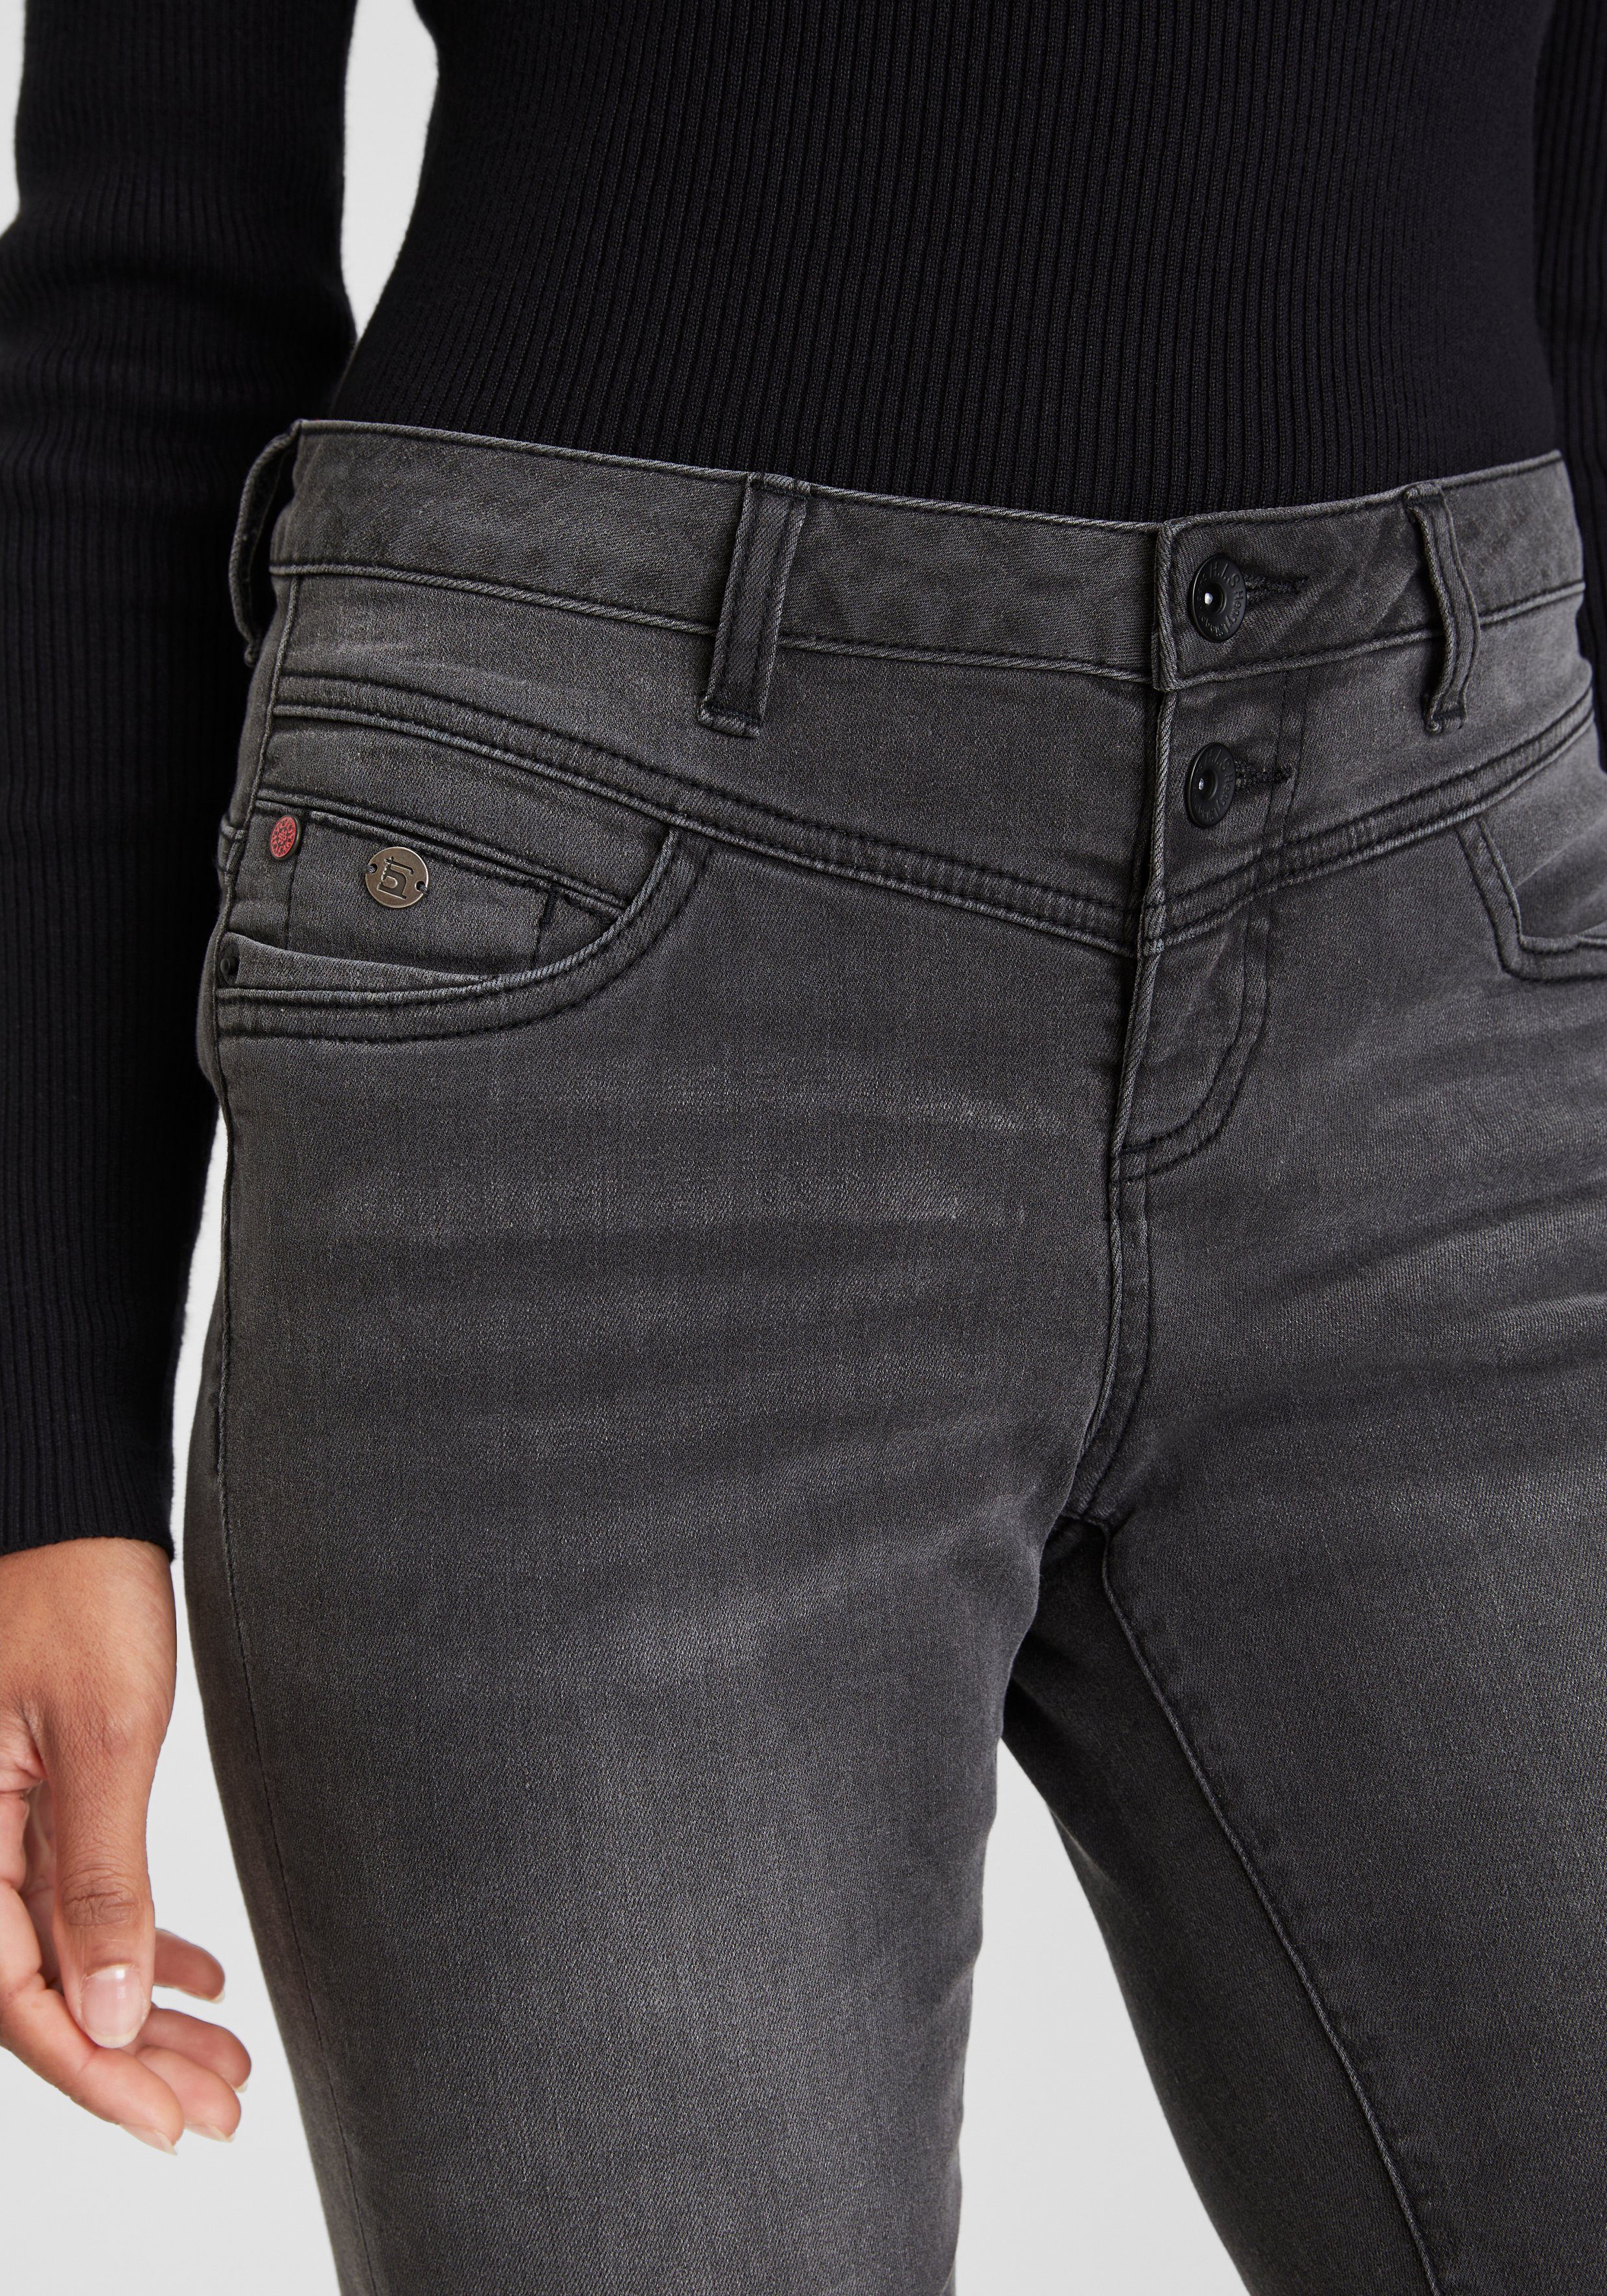 H.I.S 5-Pocket-Jeans djunaHS ökologische, wassersparende Ozon durch dark Wash grey Produktion